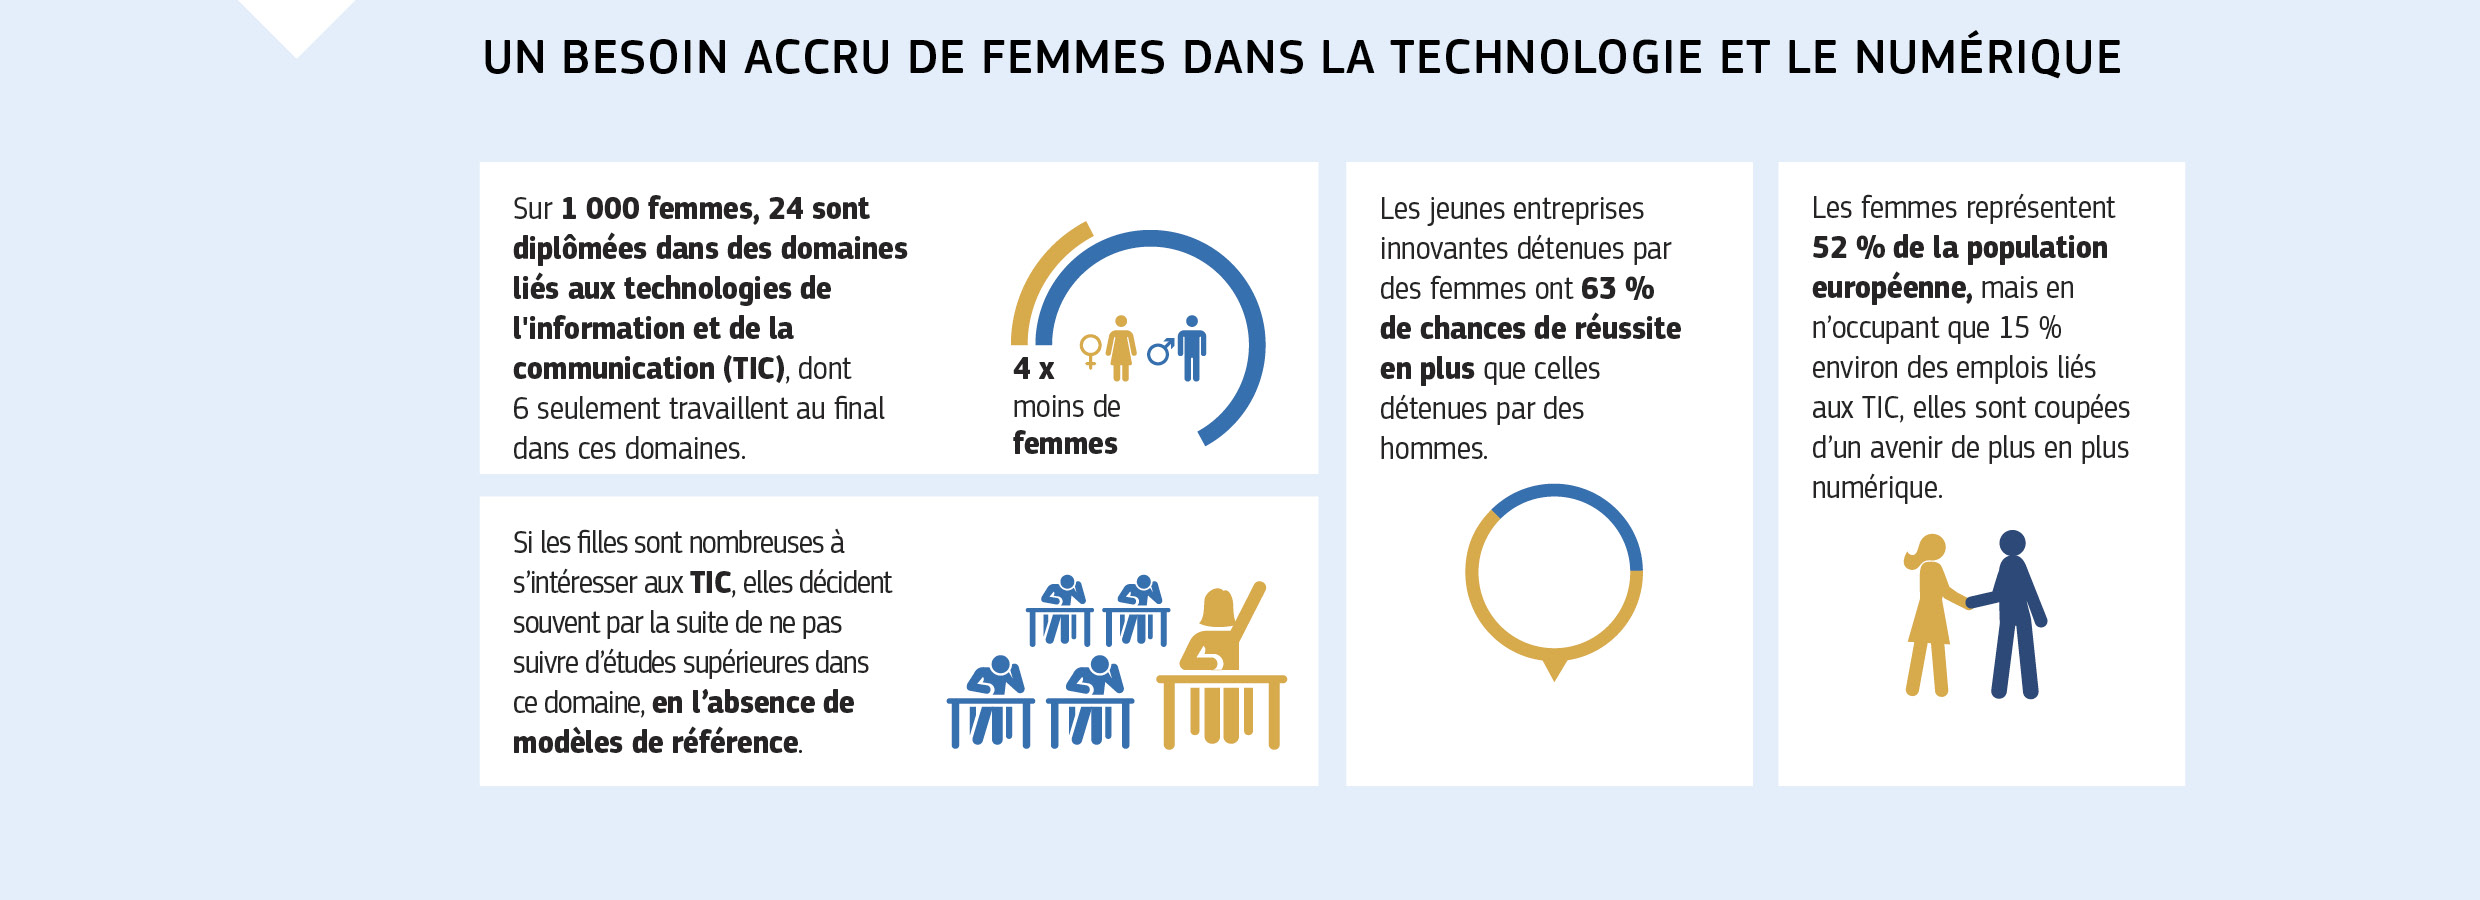 UN BESOIN ACCRU DE FEMMES DANS LA TECHNOLOGIE ET LE NUMÉRIQUE